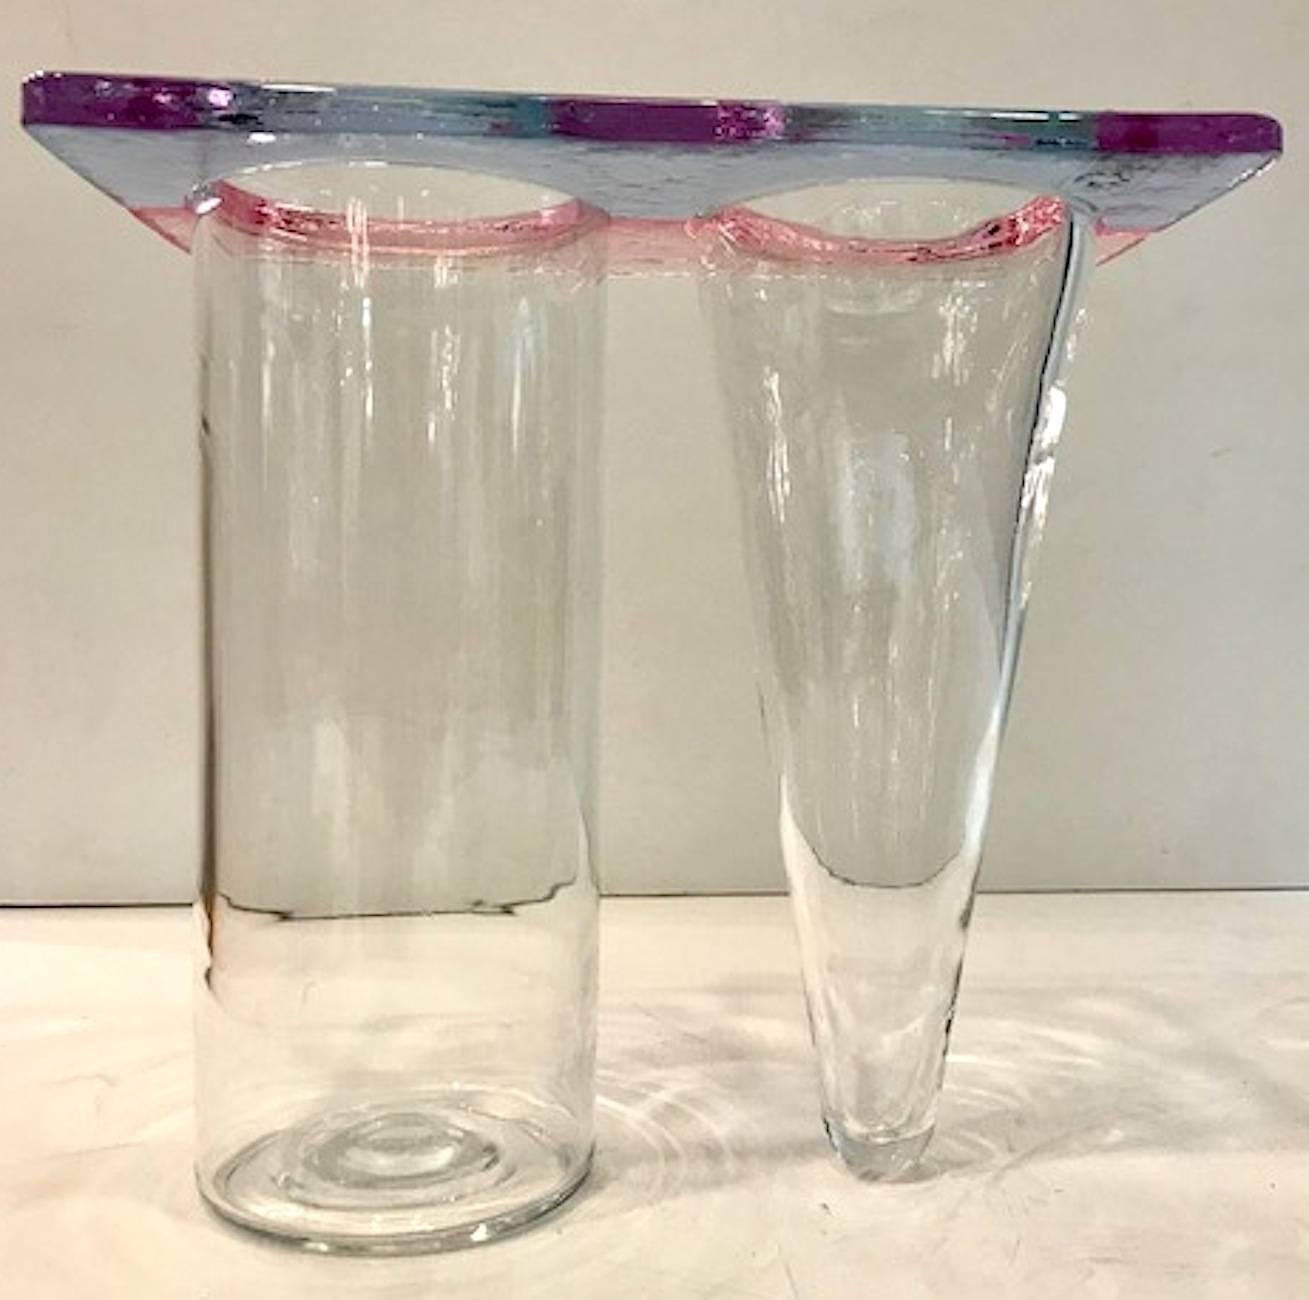 Un vase double au design géométrique typique du style Memphis des années 1980. Soufflé en verre bleu clair, rose et transparent, le vase double présente un côté en colonne et l'autre en forme de cône. Très très bon état.